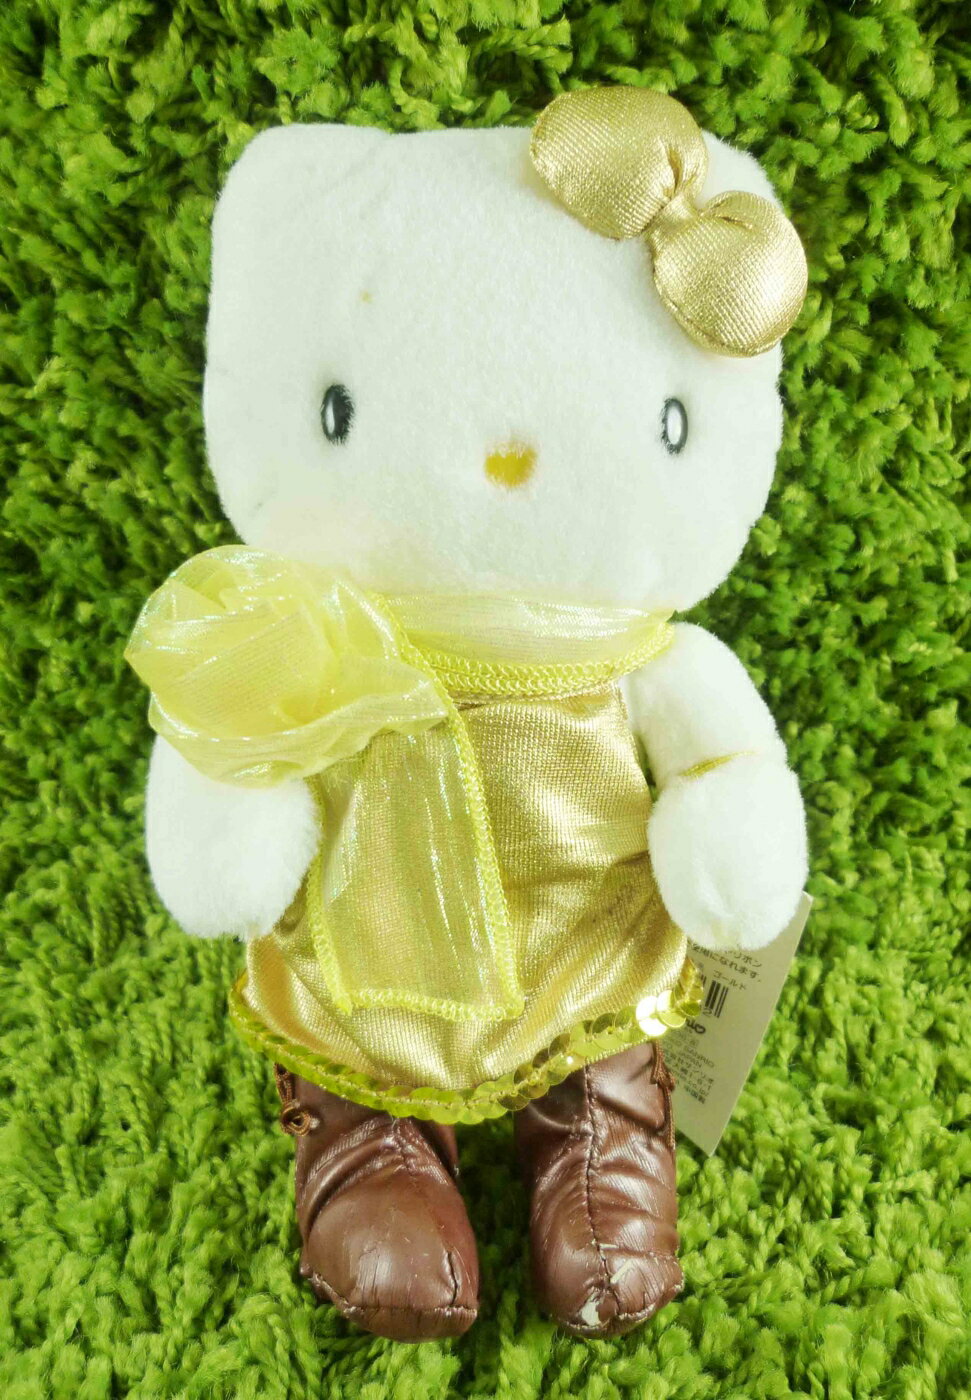 【震撼精品百貨】Hello Kitty 凱蒂貓 KITTY絨毛娃娃-全身圖案-金色 震撼日式精品百貨